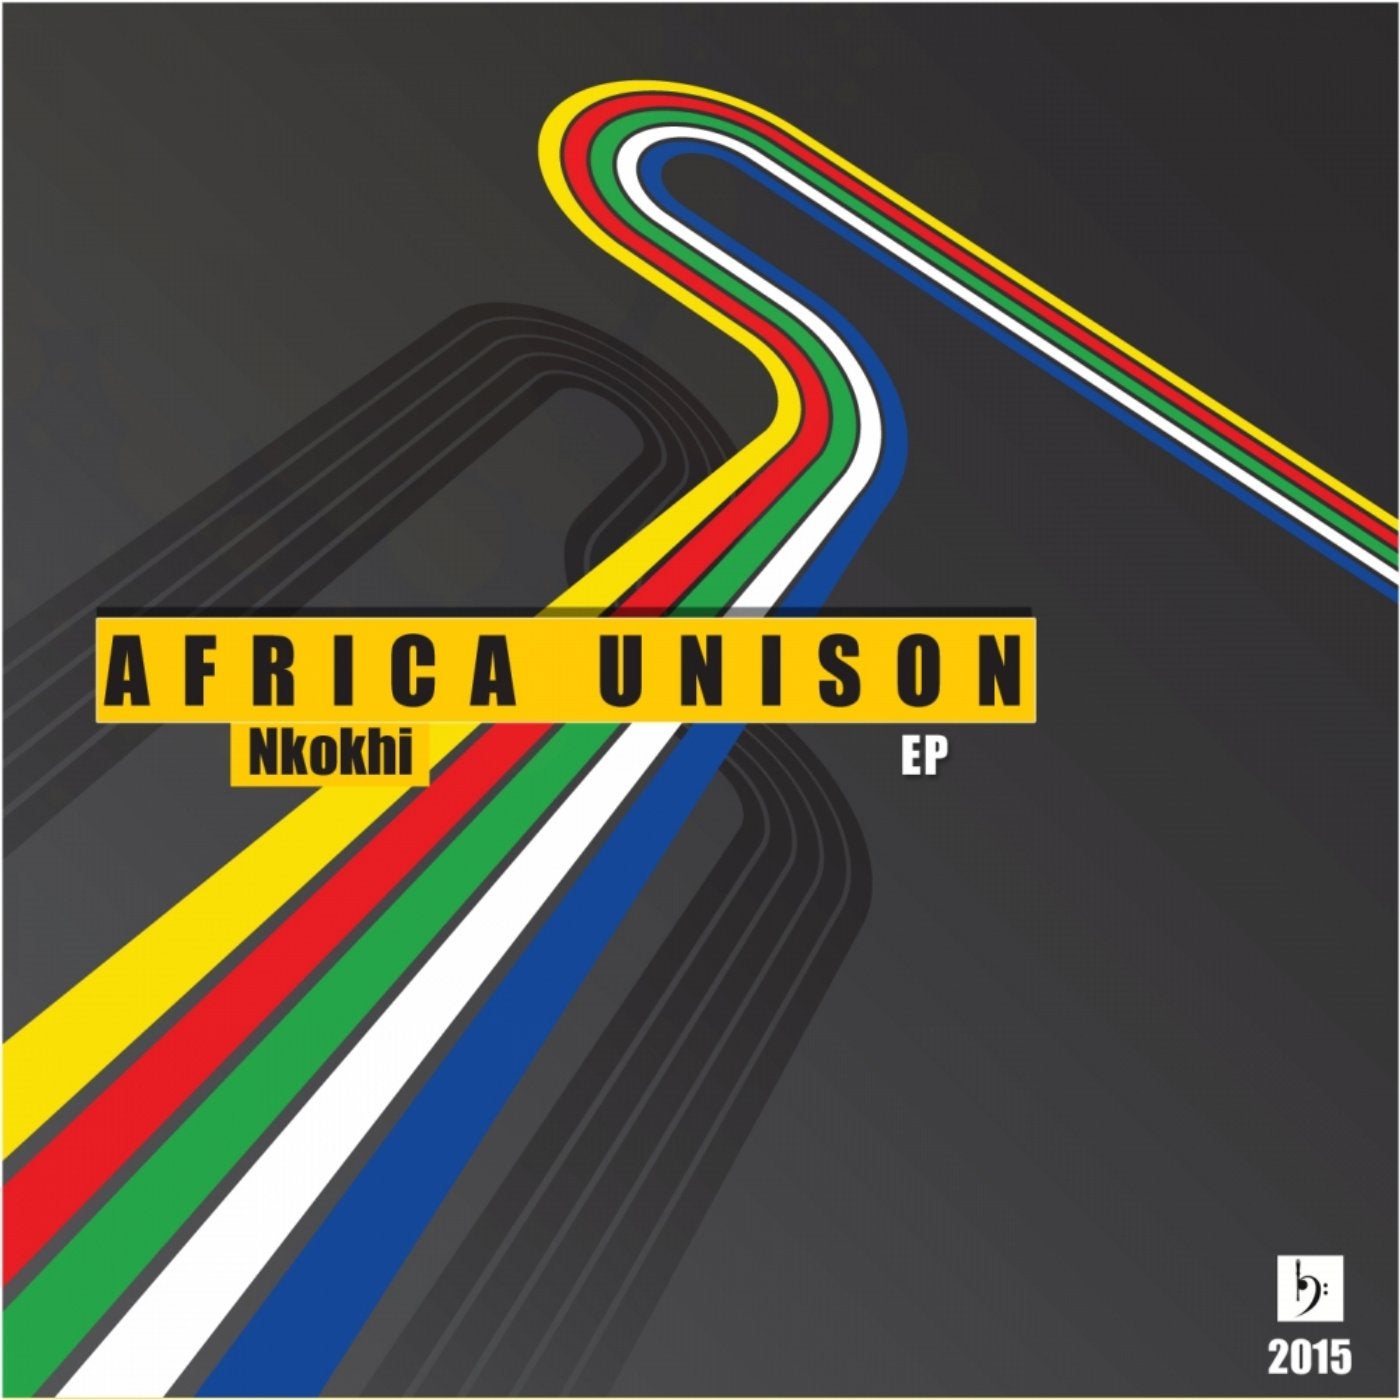 Africa Unison